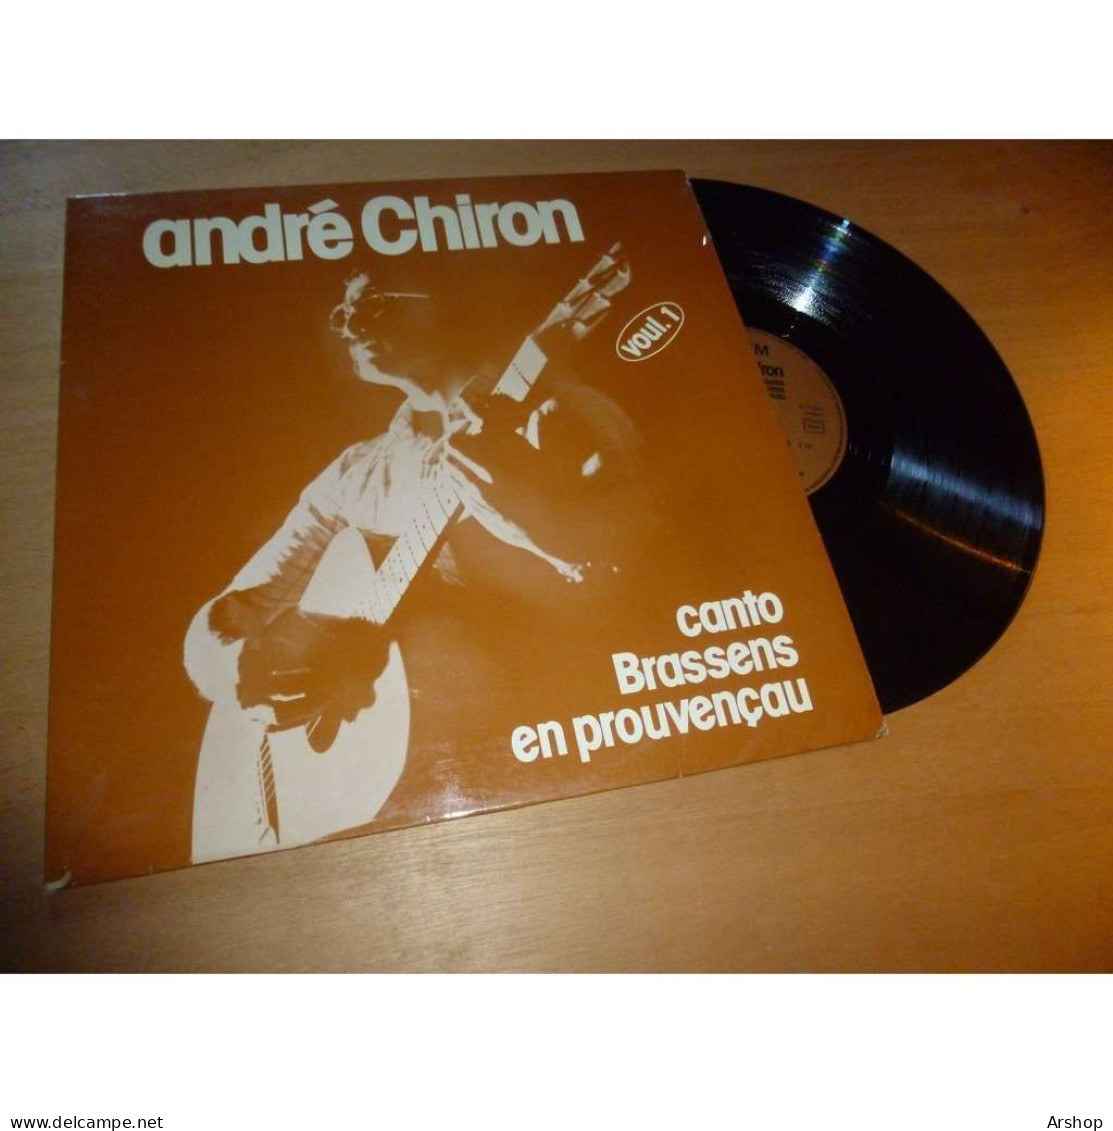 ANDRÉ CHIRON Canto GEORGES BRASSENS En Provencau - SAPEM SAP 204 Lp 1979 - Autres - Musique Française